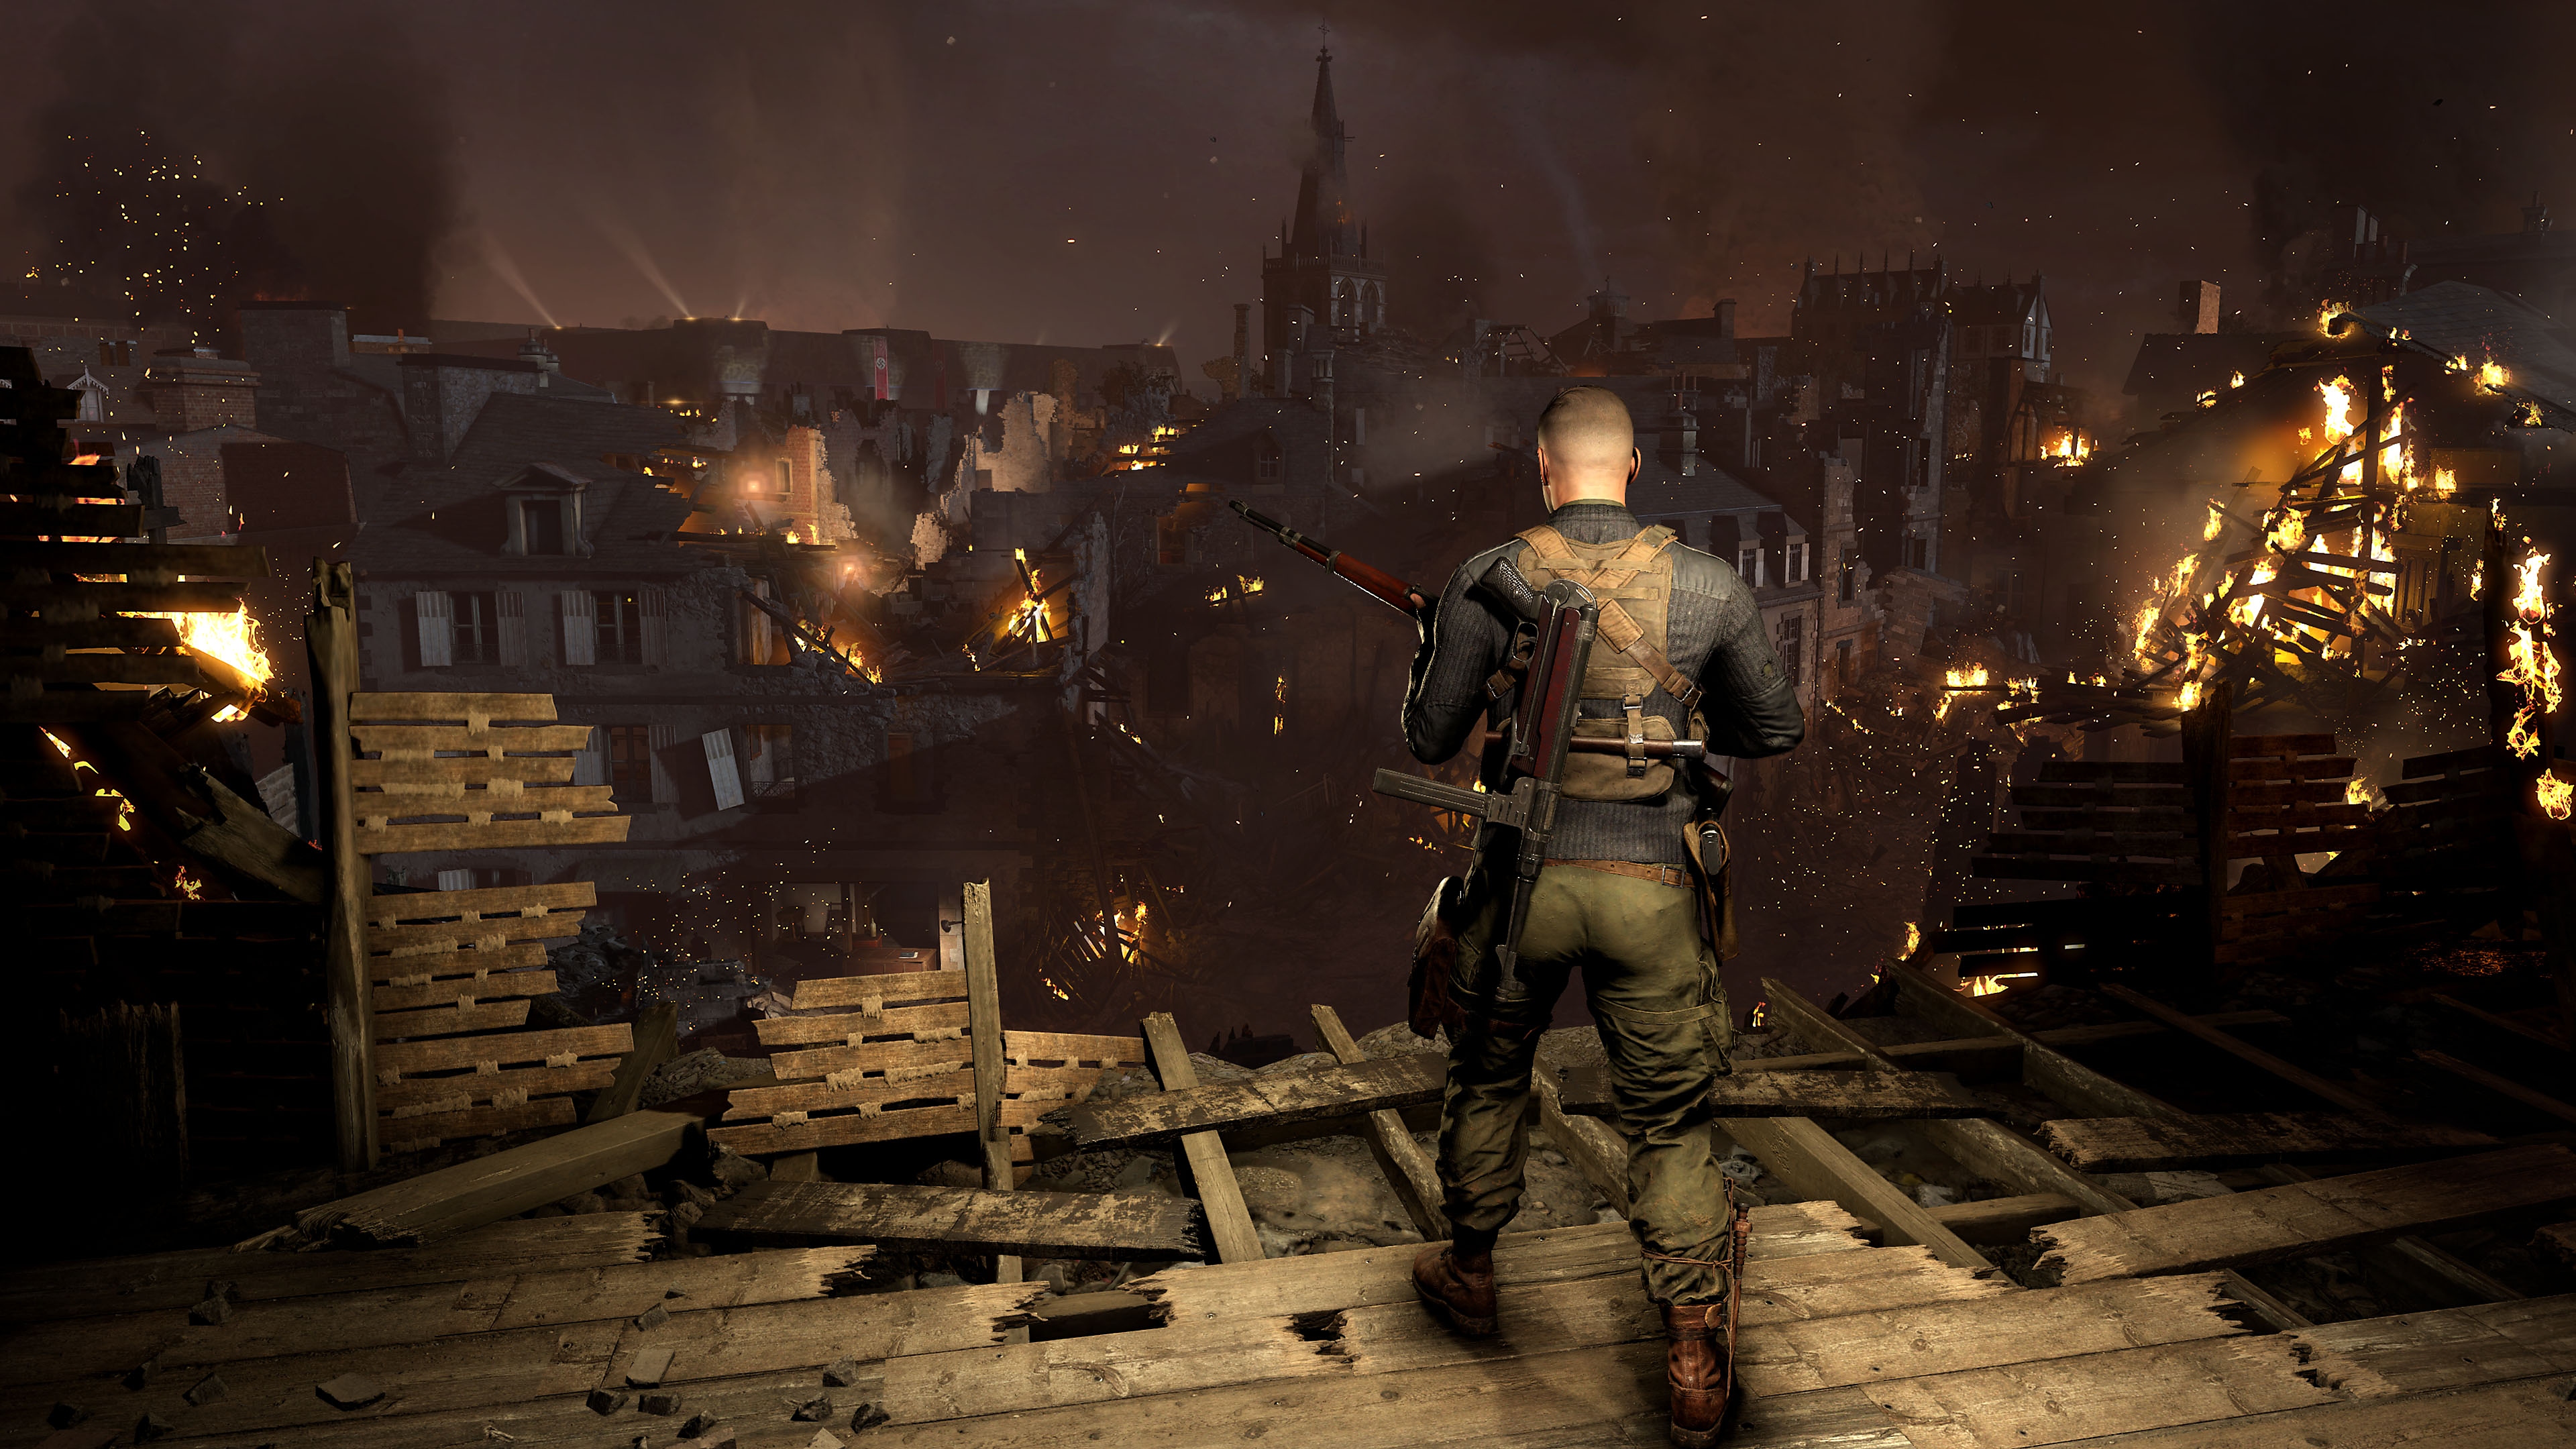 Sniper Elite 5-skærmbillede, som viser en figur, der kigger ud over en by med bygninger i brand